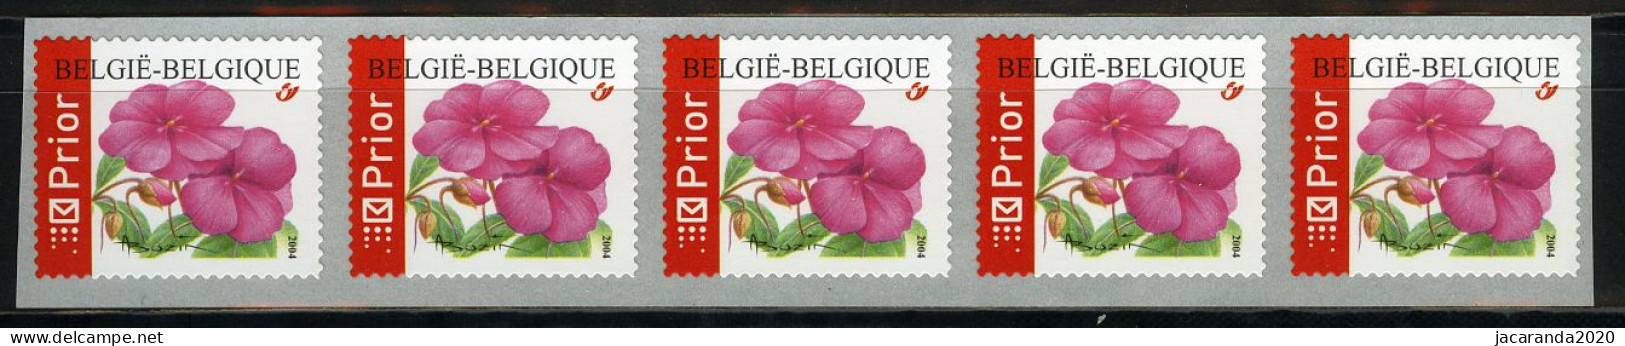 België R110 - Bloemen - Buzin (3347) - Impatiens - Vlijtig Liesje - 2004 - Strook Van 5 - Bande De 5  - Coil Stamps